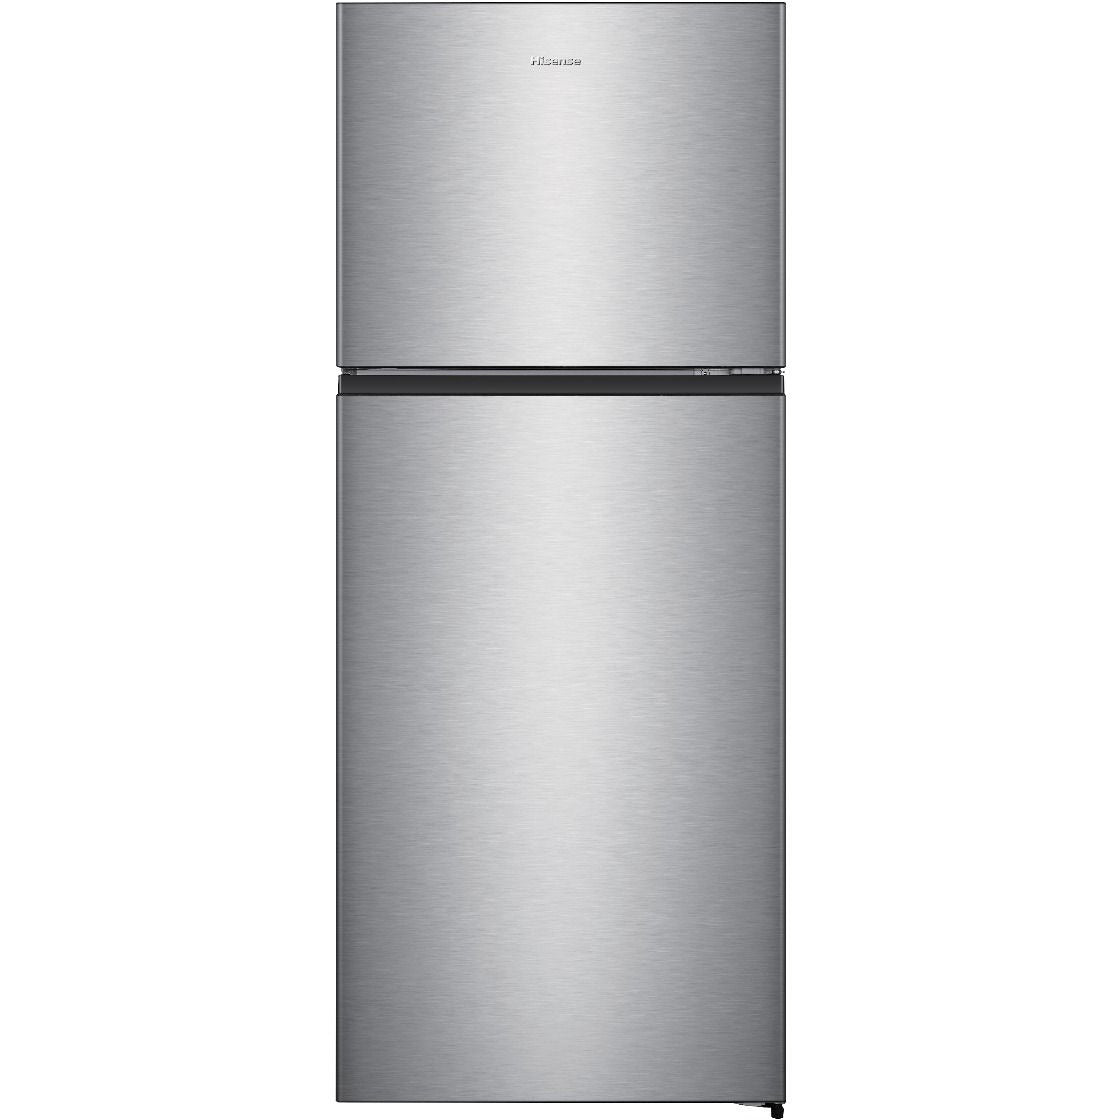 Hisense 599L Top Mount Refrigerator RT599N4ASU